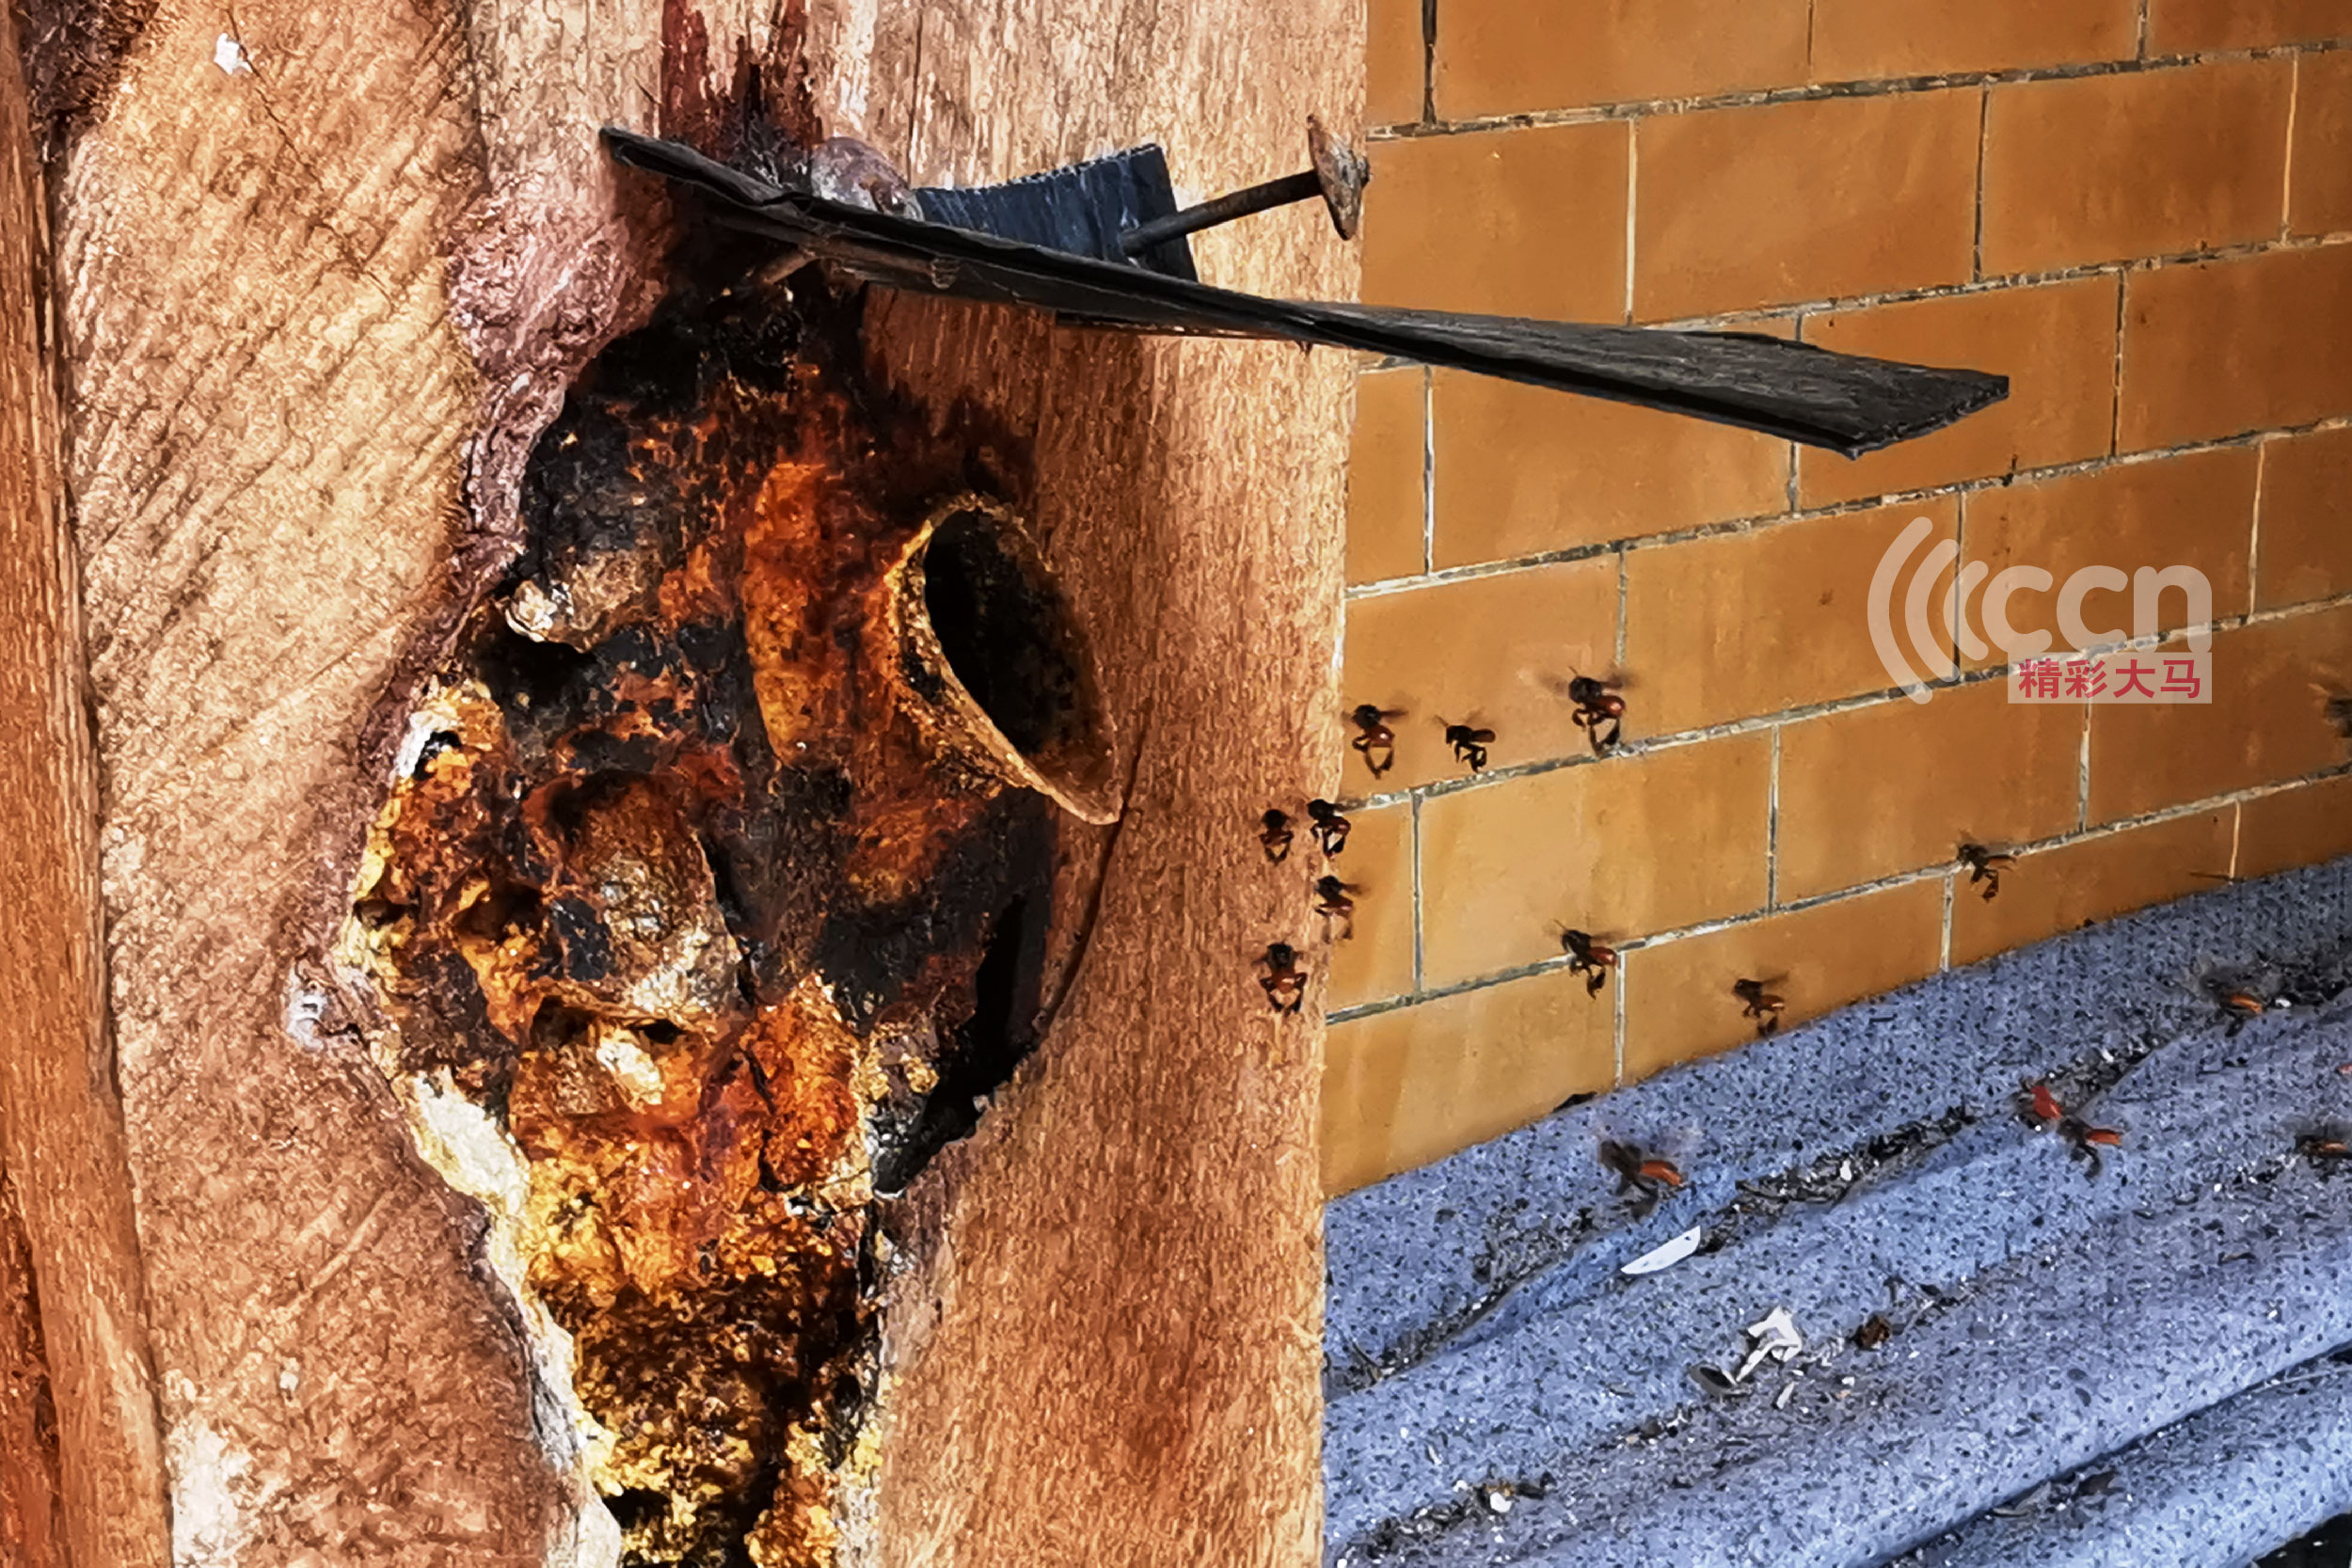 银峰（Stingless Bee）又名无刺蜂，银蜂的蜂巢筑在树桐内，所筑的巢呈长桶状，密封性良好，只留一个小孔与外界相通。-杨琇媖摄-